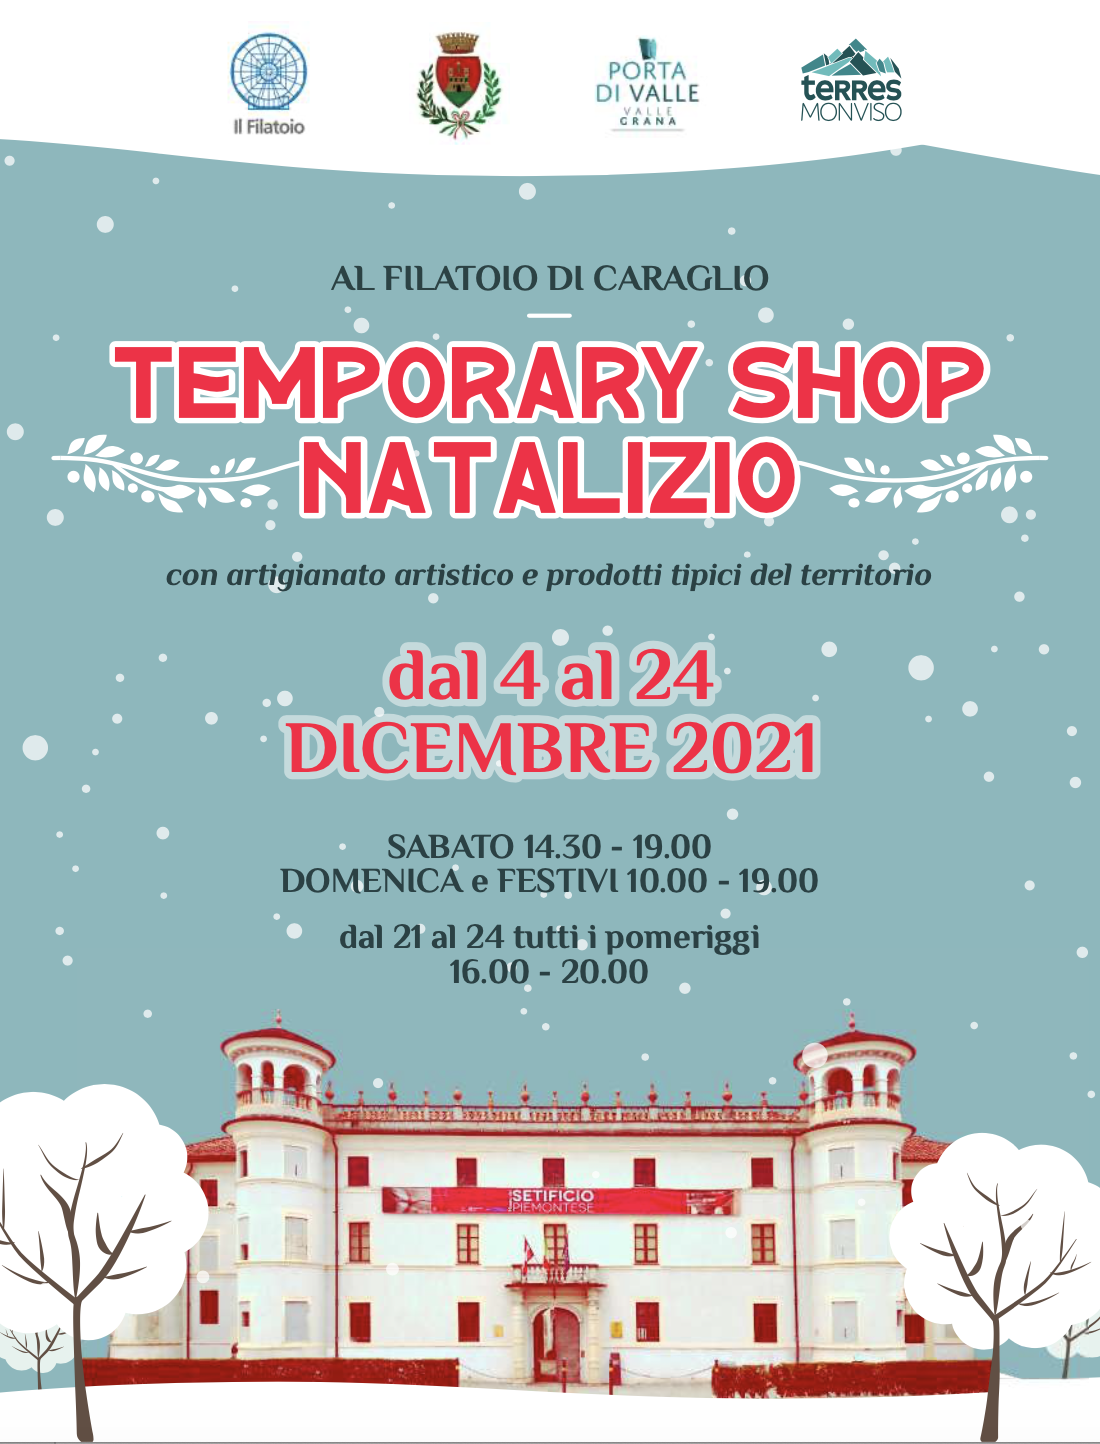 Temporary Shop natalizio al Filatoio